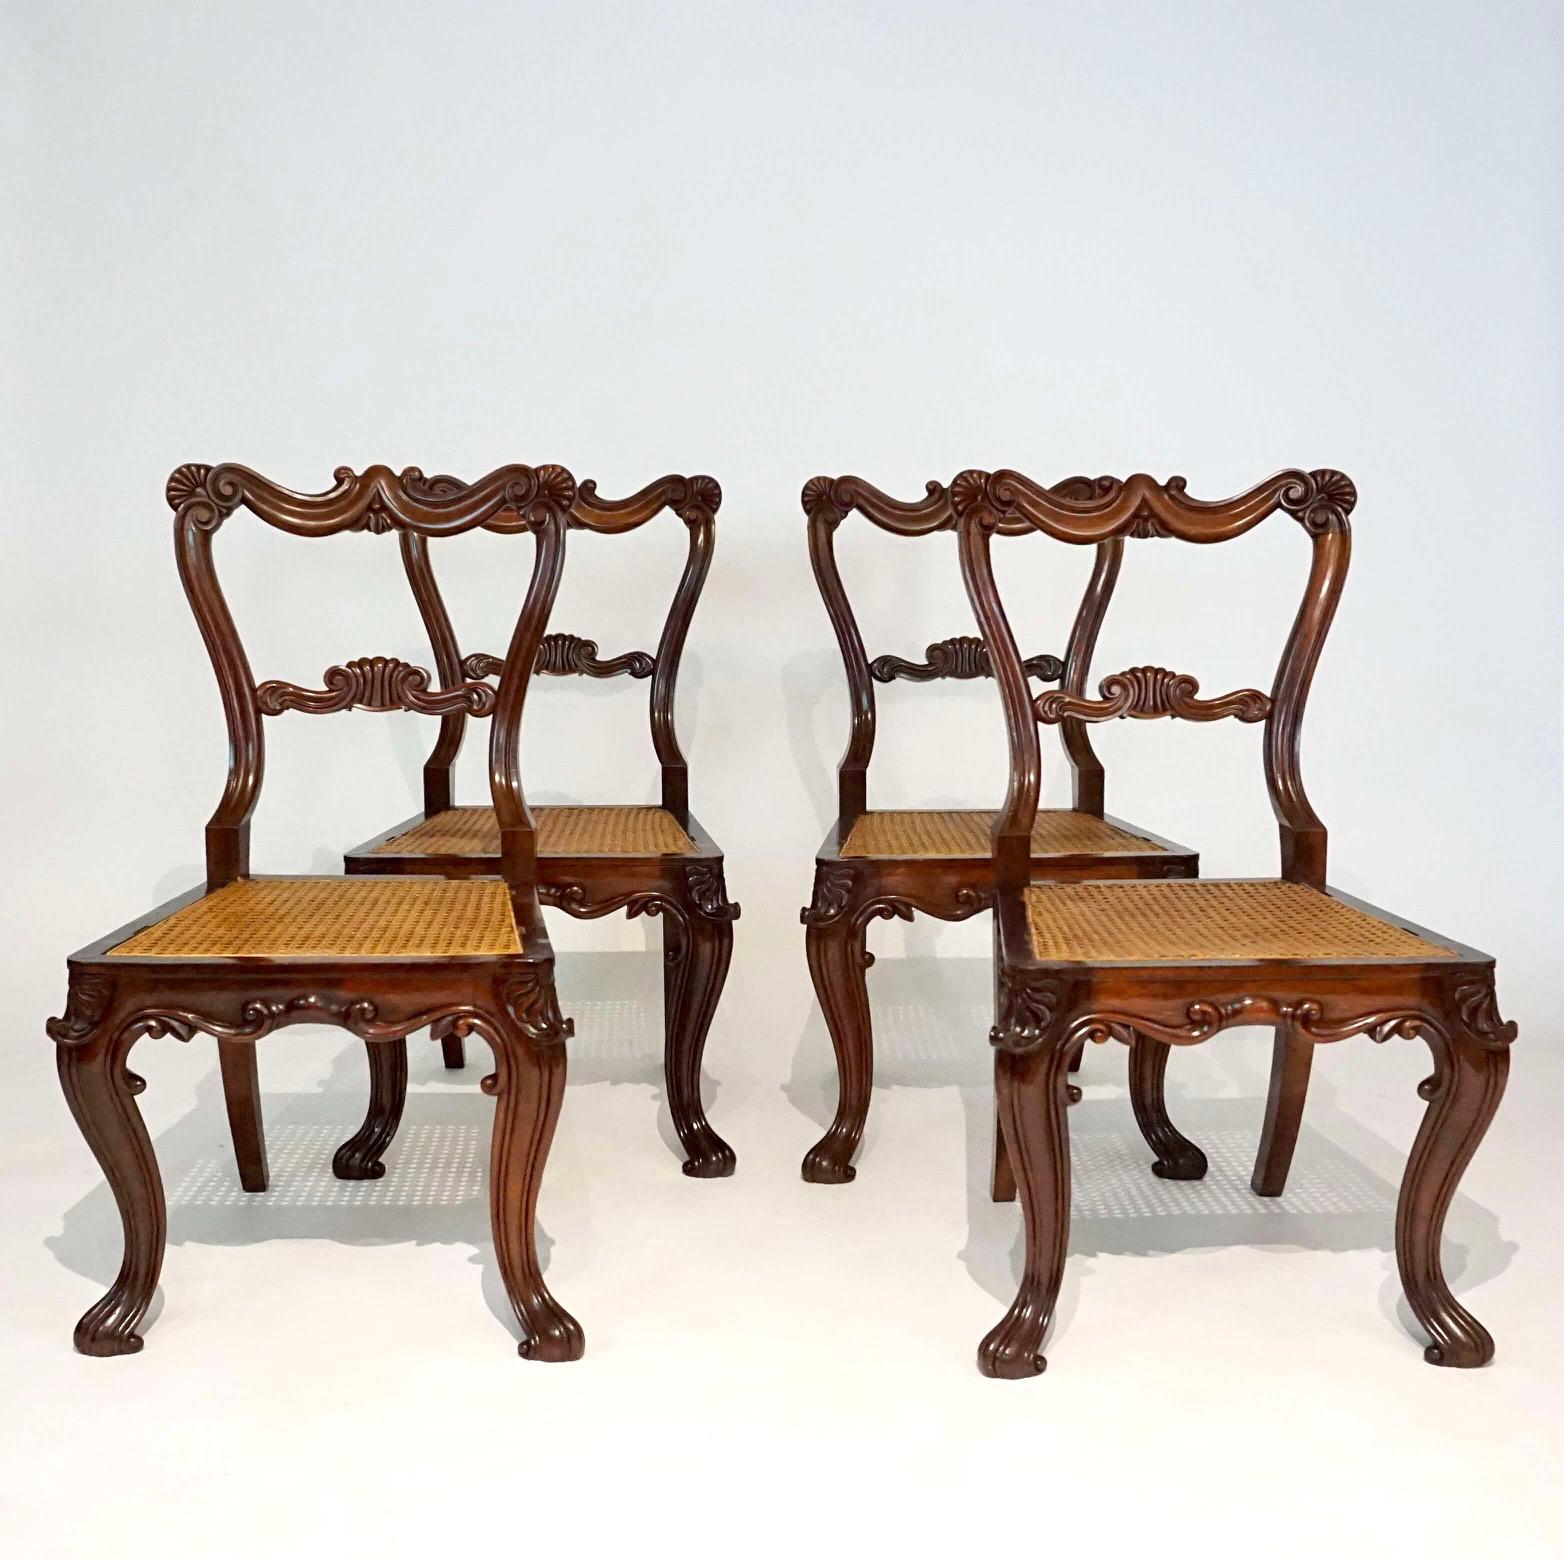 Un ensemble exquis de quatre chaises d'appoint ou de salle à manger de style néo-rococo George IV vers 1825, toutes signées par la légendaire entreprise d'ébénisterie Gillows de Lancaster, avec des cadres en bois de rose sculptés de feuillages et